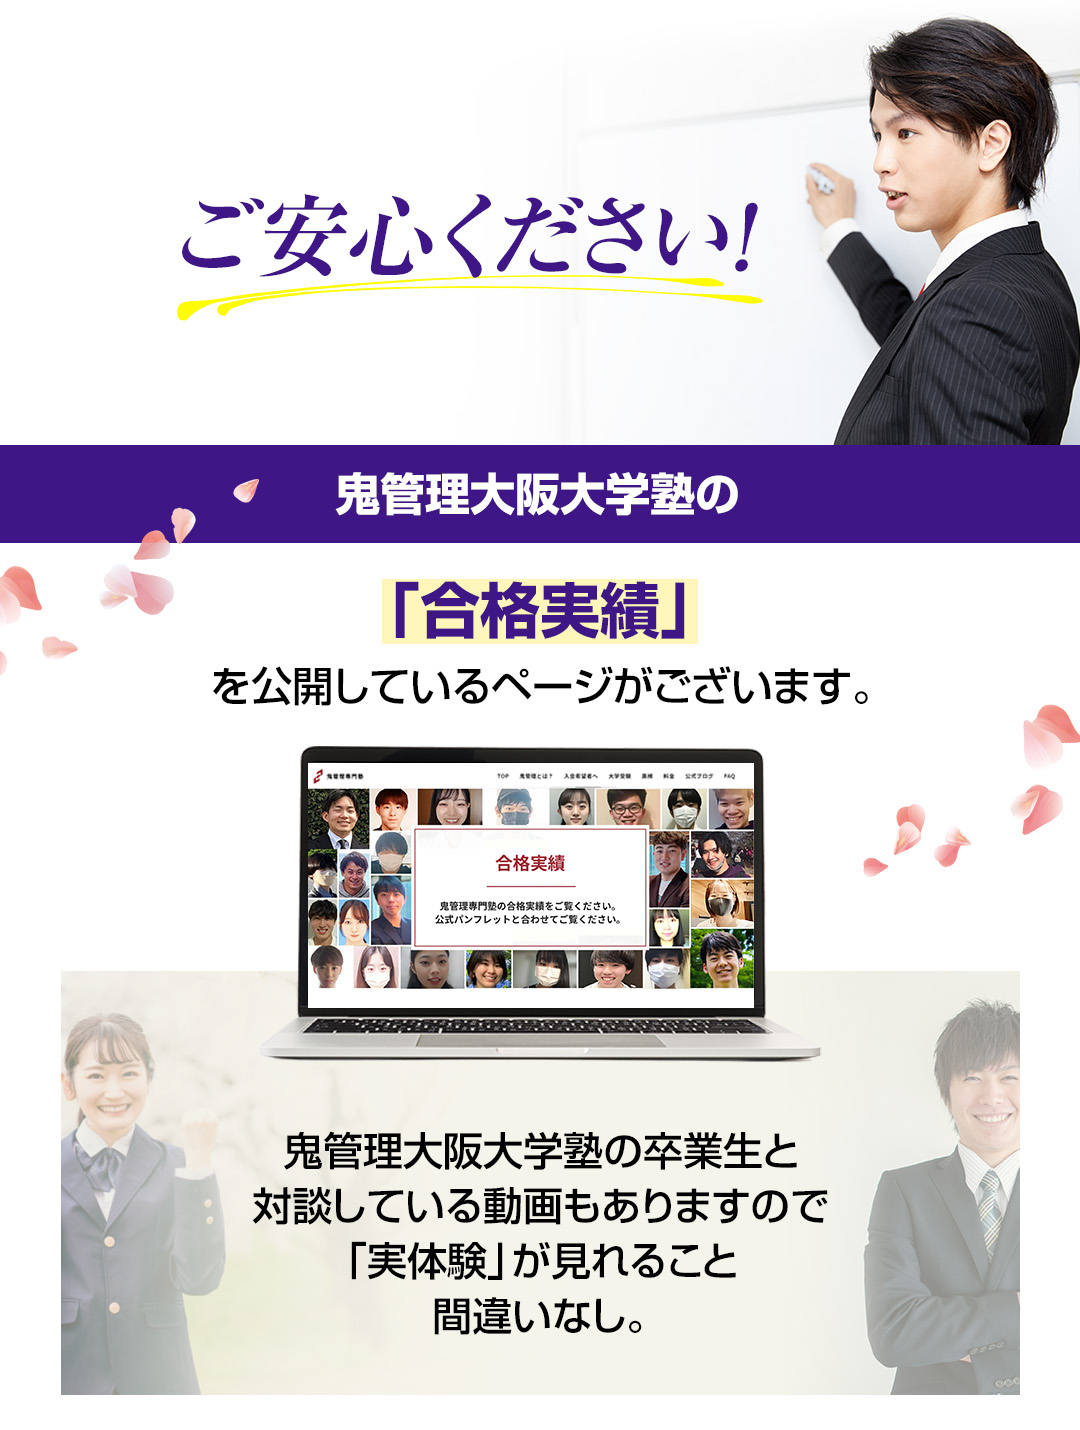 鬼管理大阪大学塾の「合格実績」を公開しているページがございます